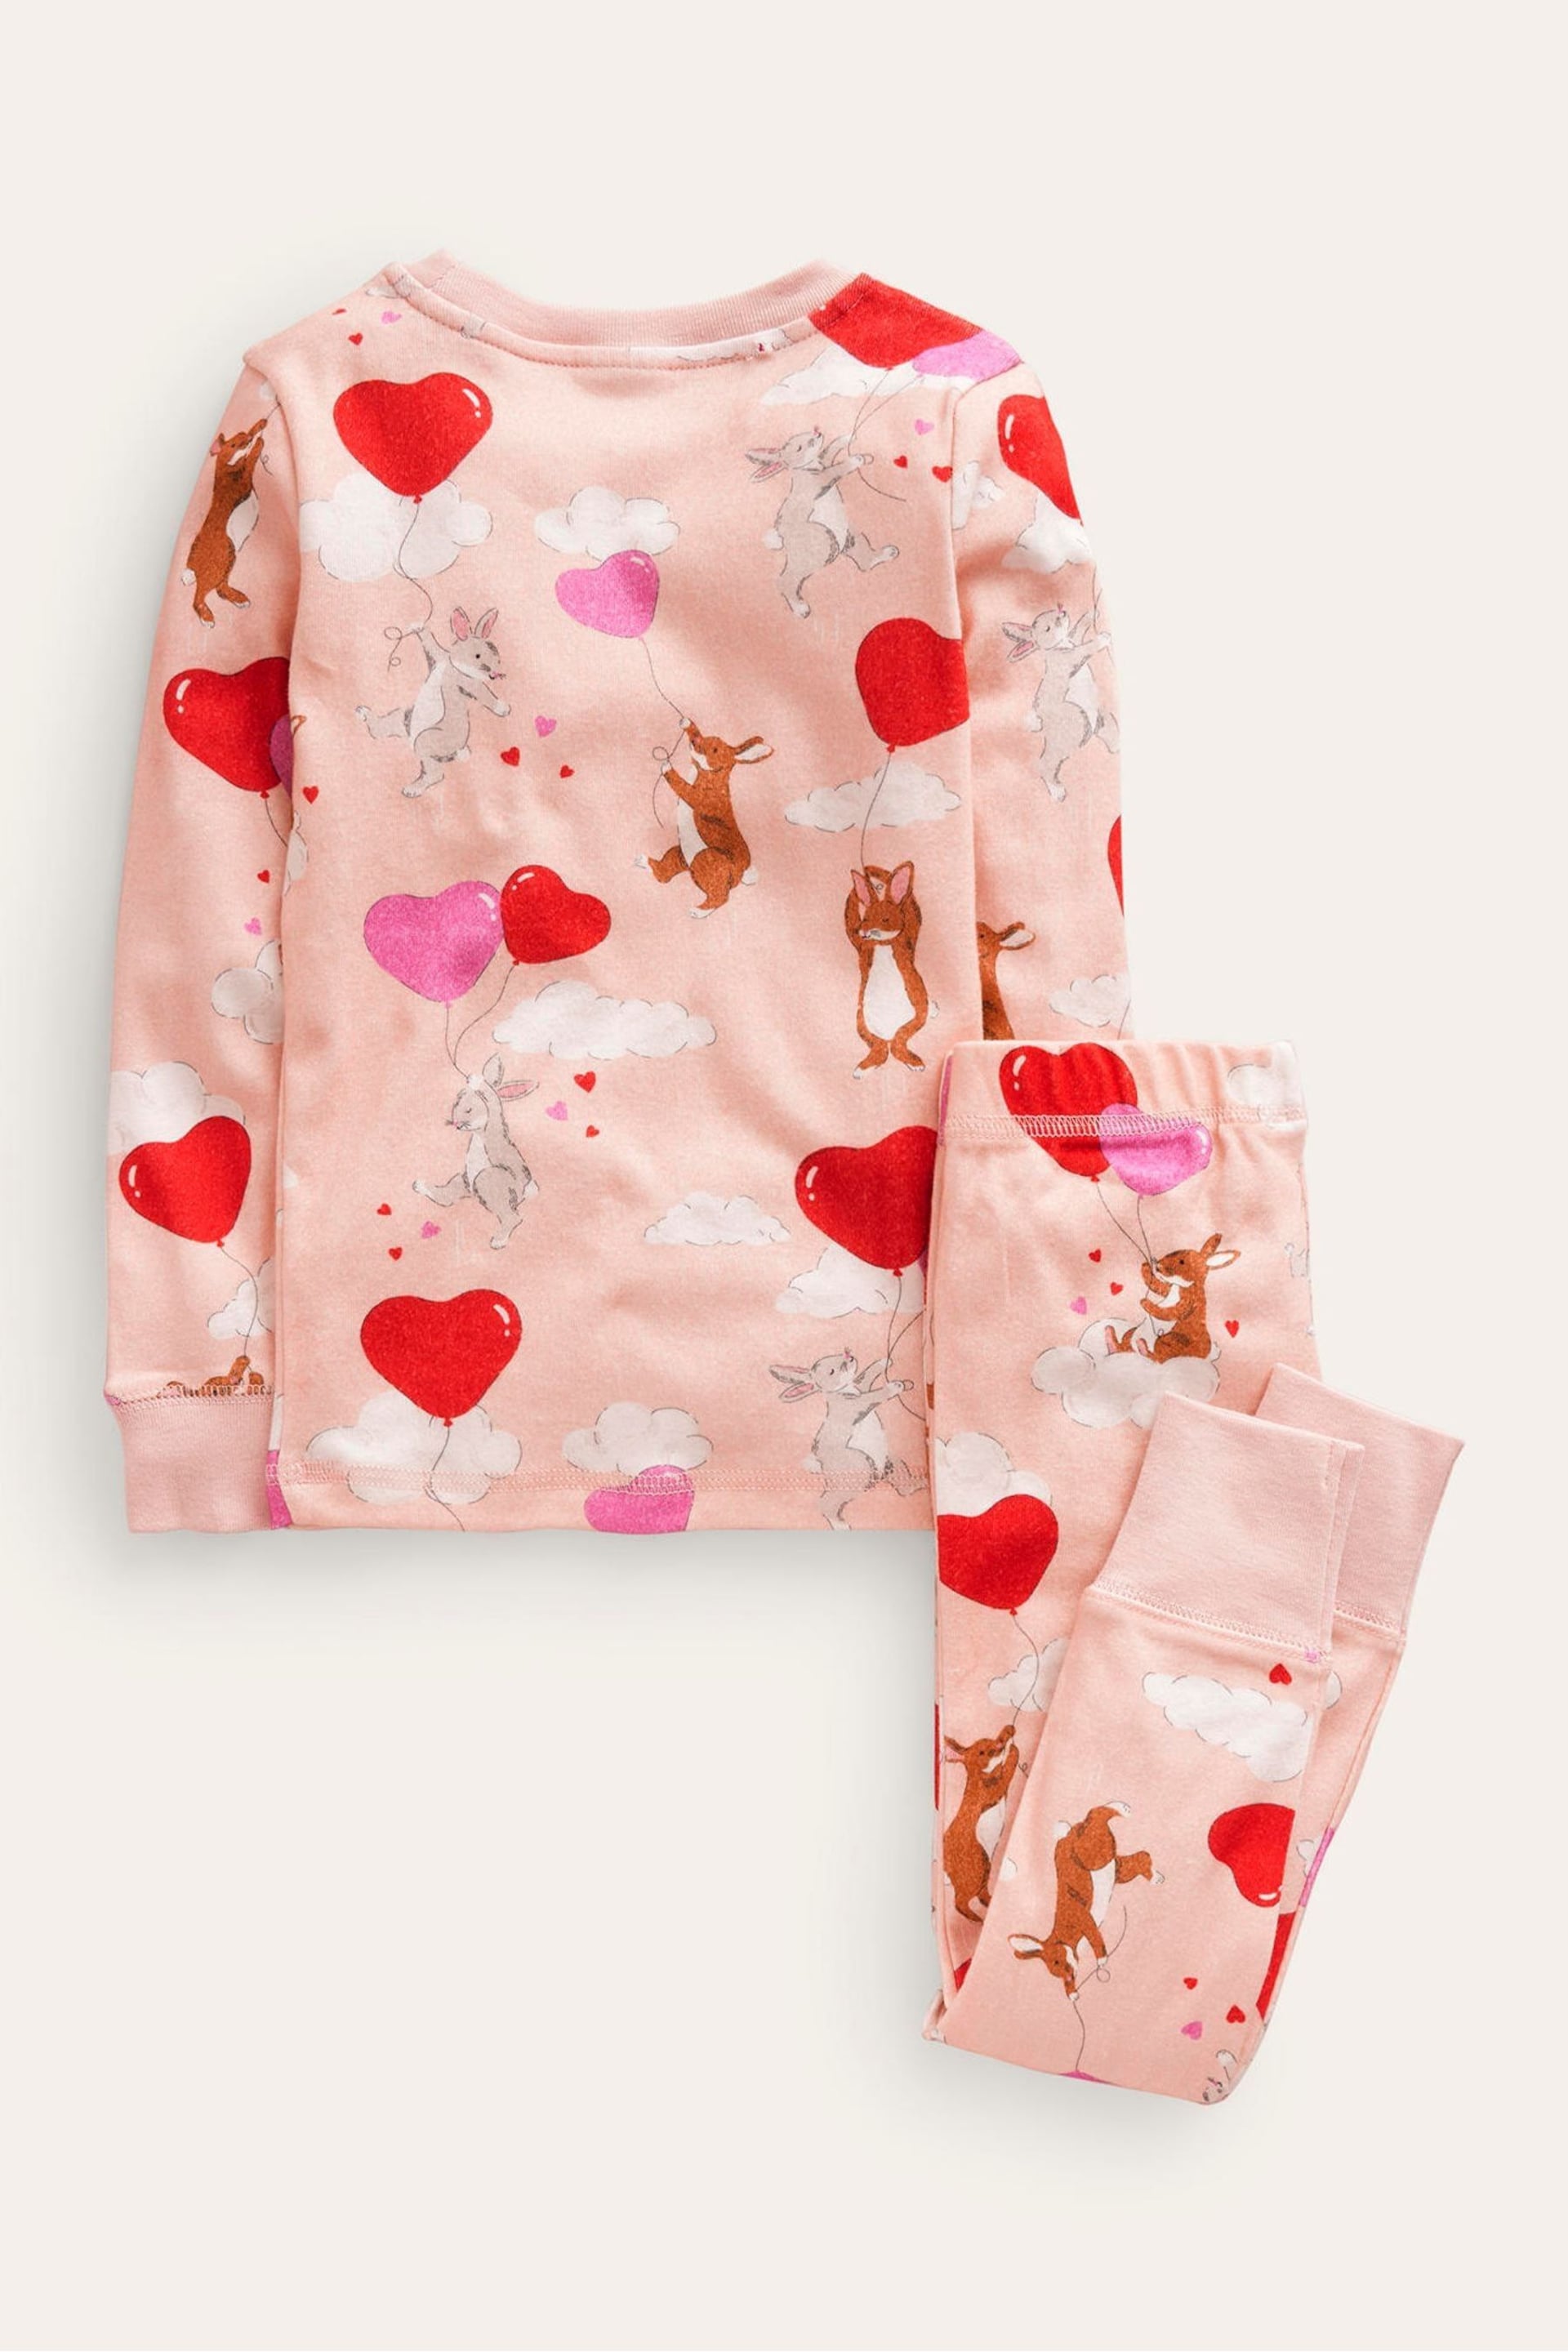 Boden Pink Snug Long John Bunny Heart Pyjamas - Image 2 of 3